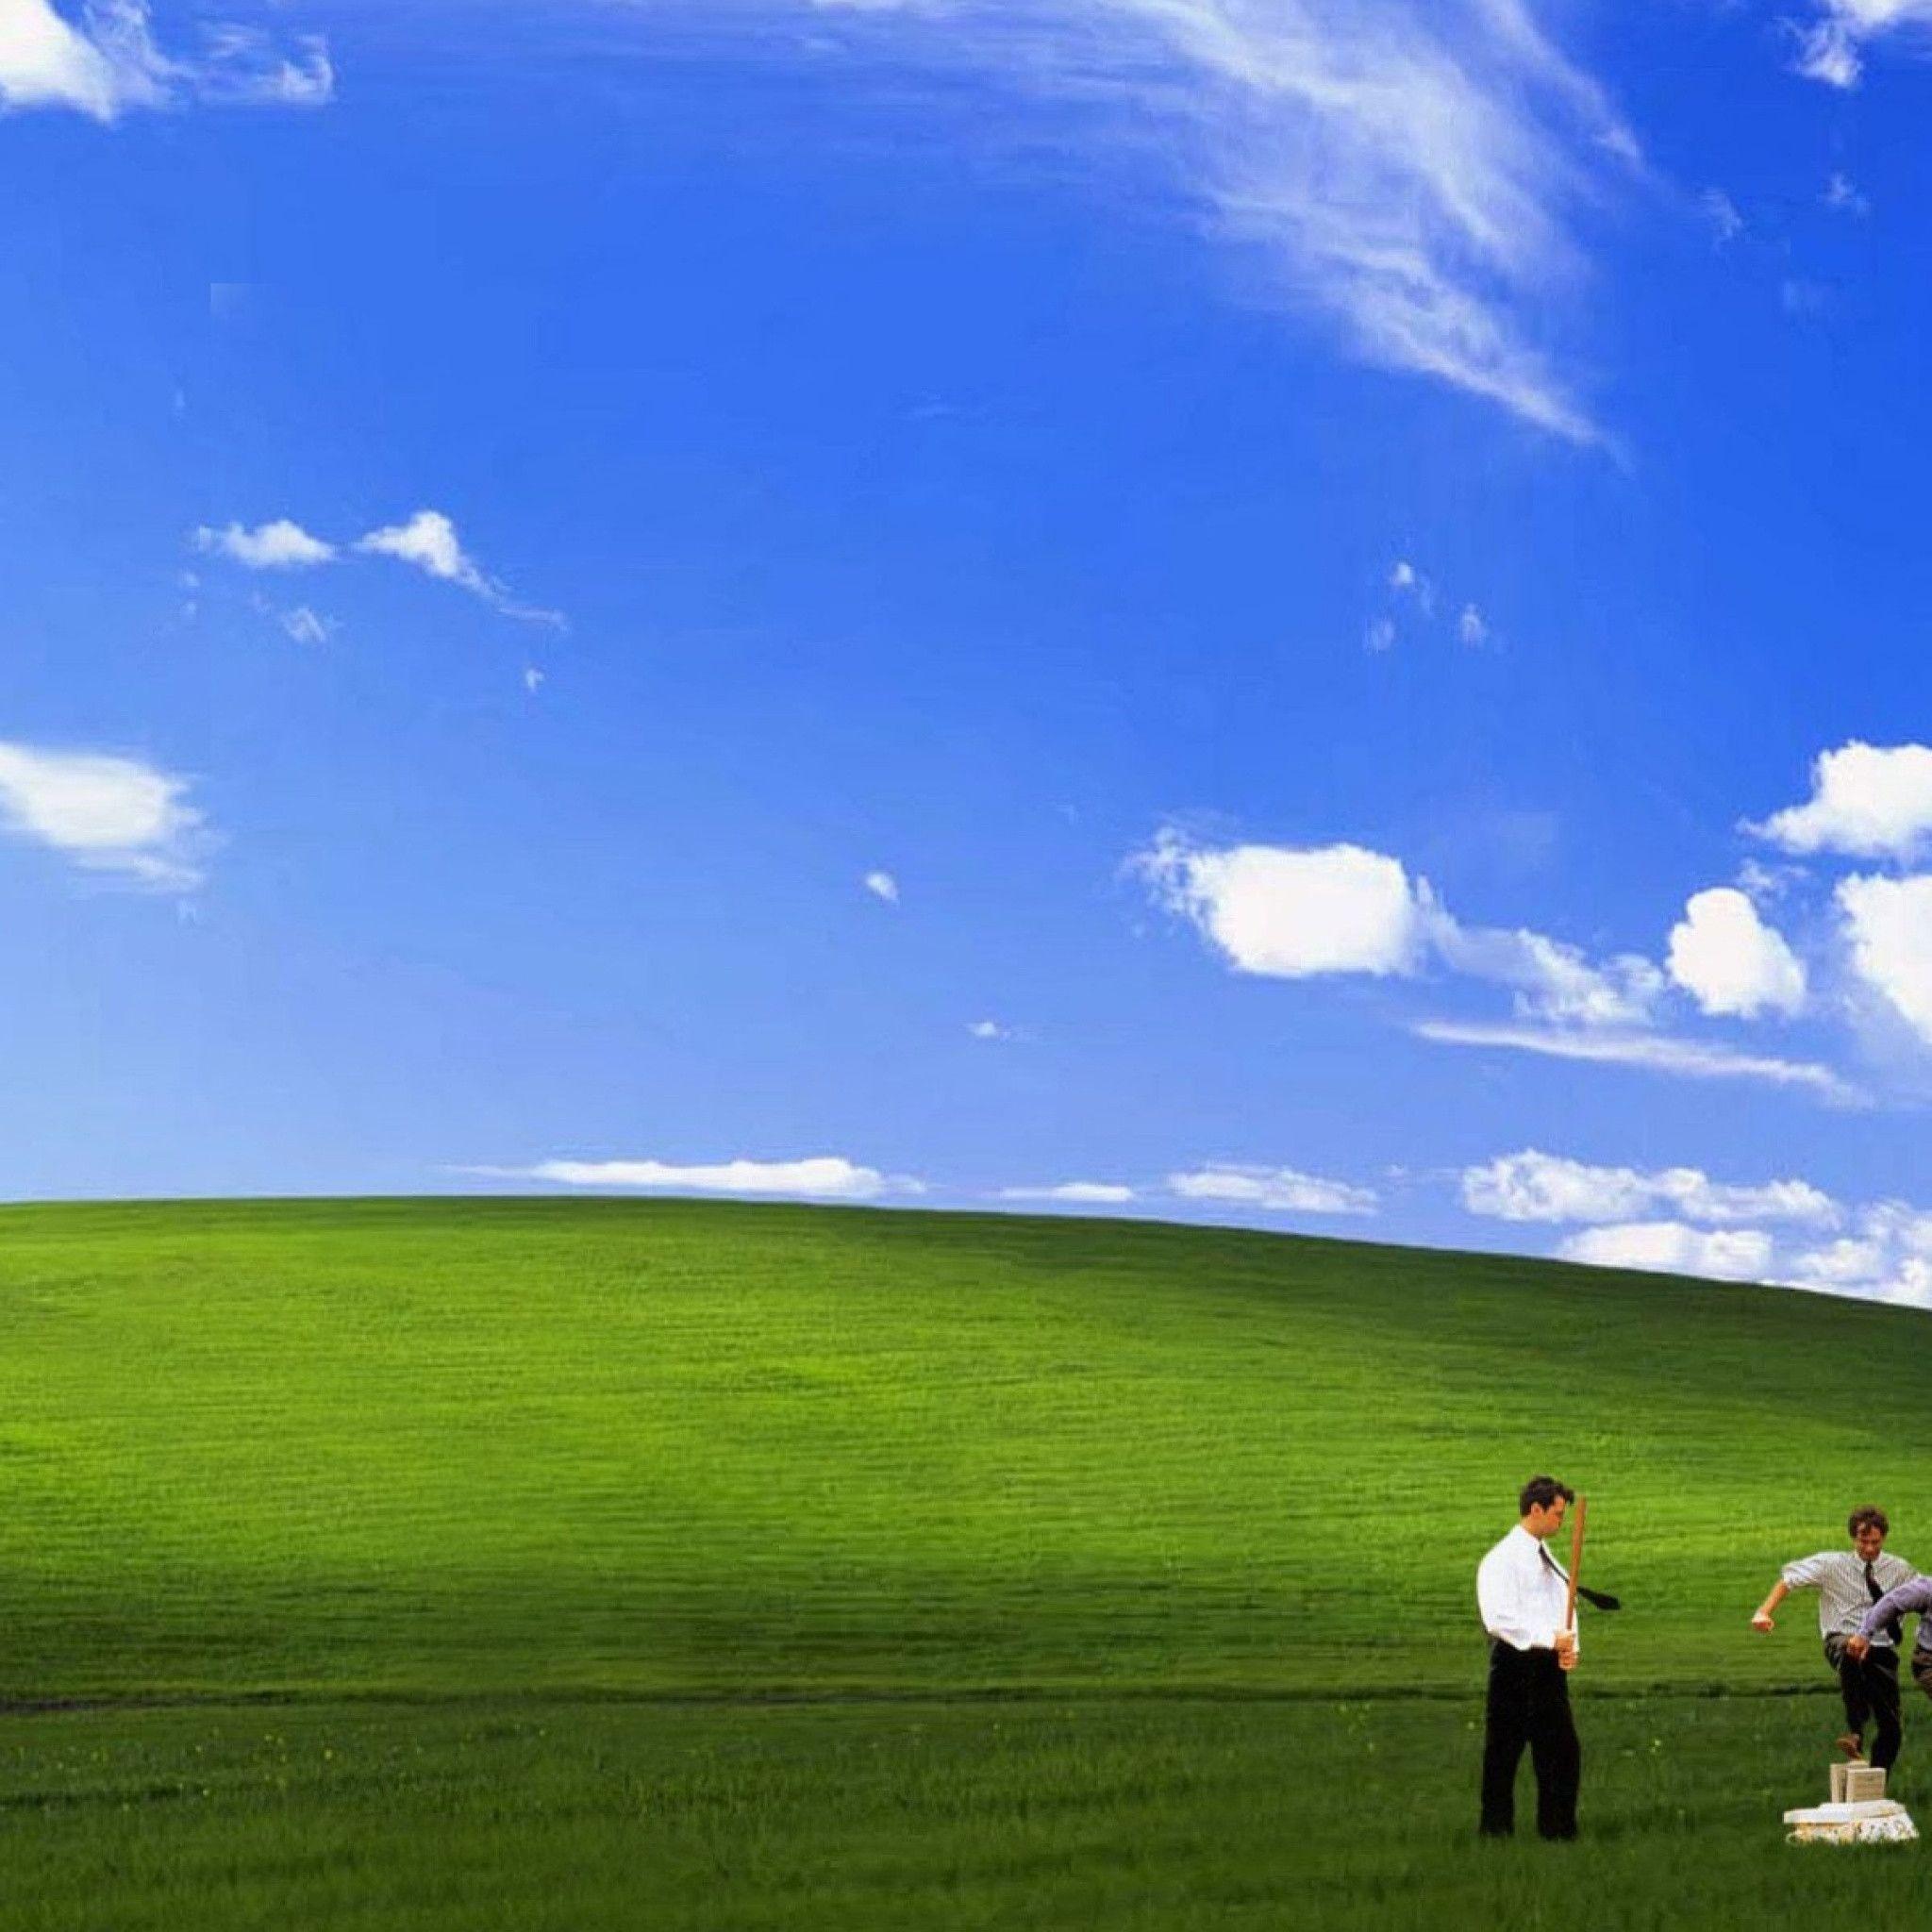 Windows XP là hệ điều hành cổ điển được nhiều người yêu mến trong suốt thập niên trước đây. Hôm nay, bạn có thể tải về bộ sưu tập hình nền miễn phí cho Windows XP của riêng mình. Với những hình ảnh đẹp về tự nhiên, động vật hoang dã, kiến trúc và nhiều hình ảnh khác, chắc chắn bạn sẽ tìm được bức hình nền yêu thích của riêng mình.